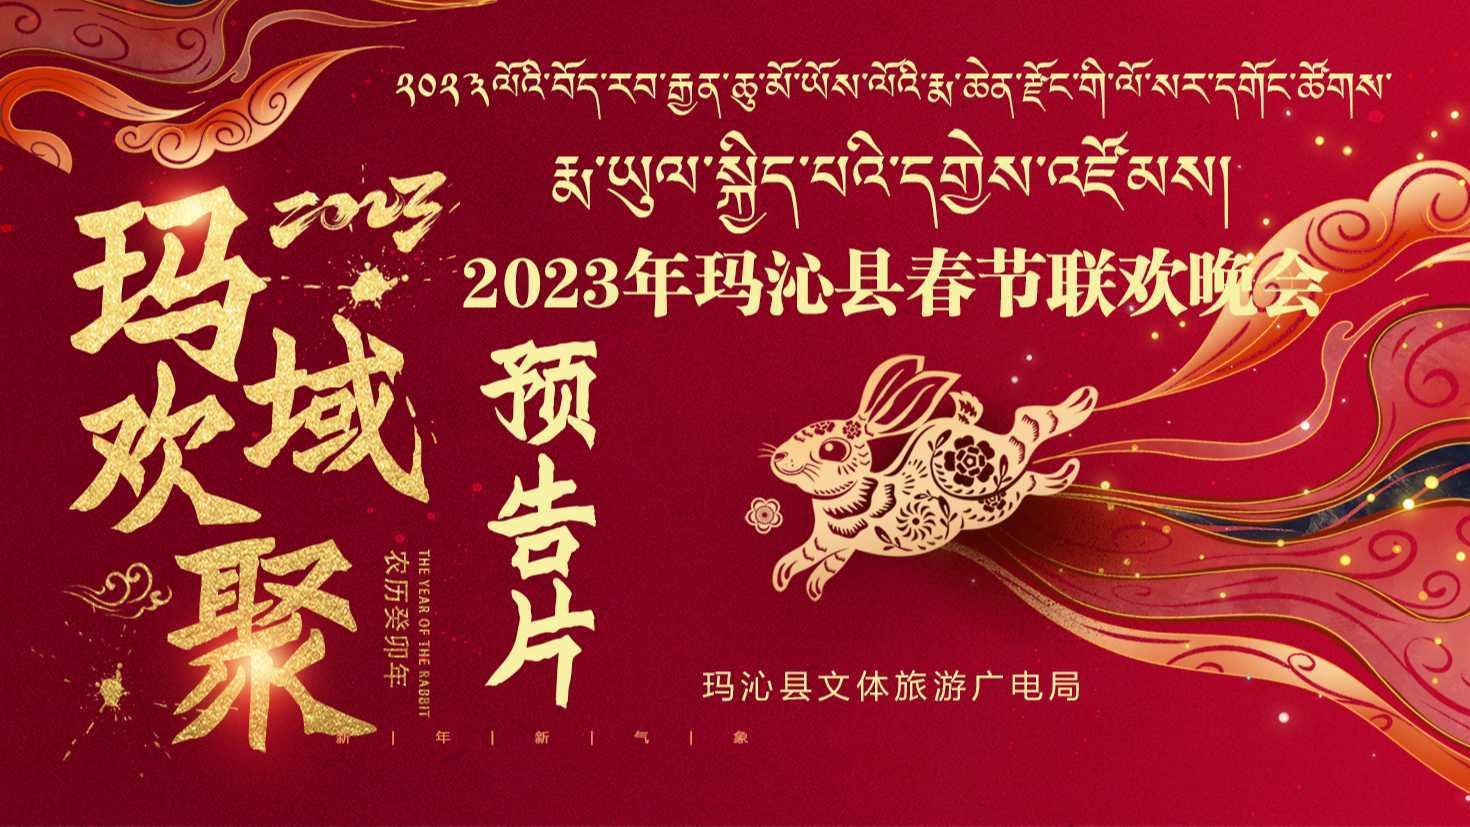 2023年玛沁县春节联欢晚会“玛域欢聚”预告片